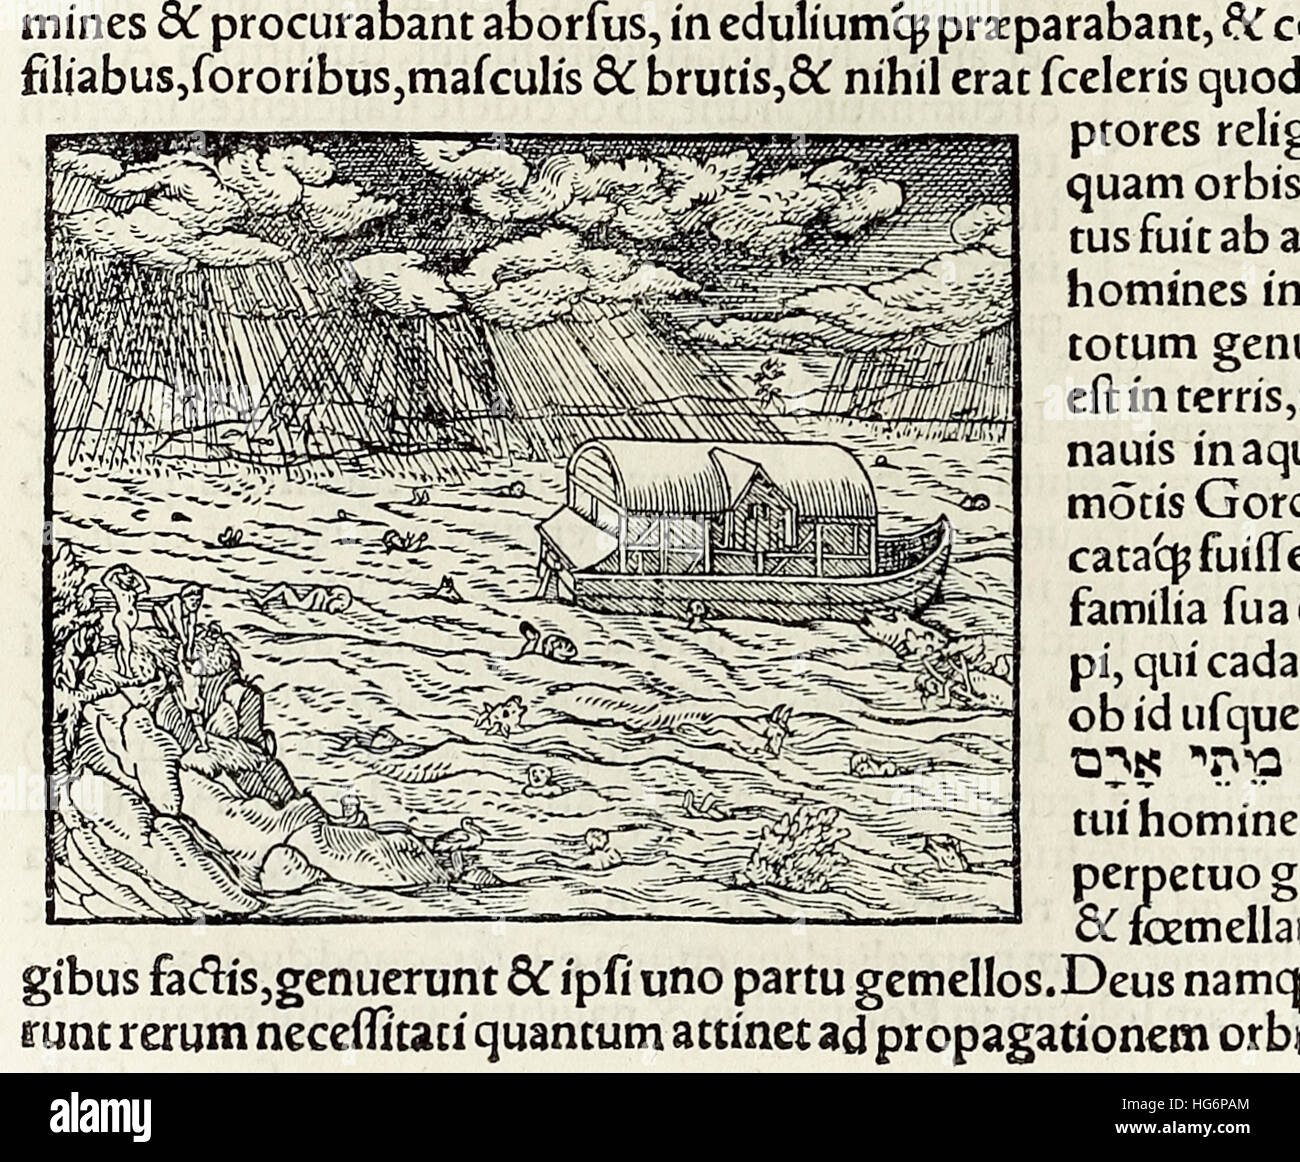 El Arca de Noé y el diluvio, xilografía de 1550 edición de 'Cosmographia' por Sebastián Munster (1488-1552). Consulte la descripción para obtener más información. Foto de stock